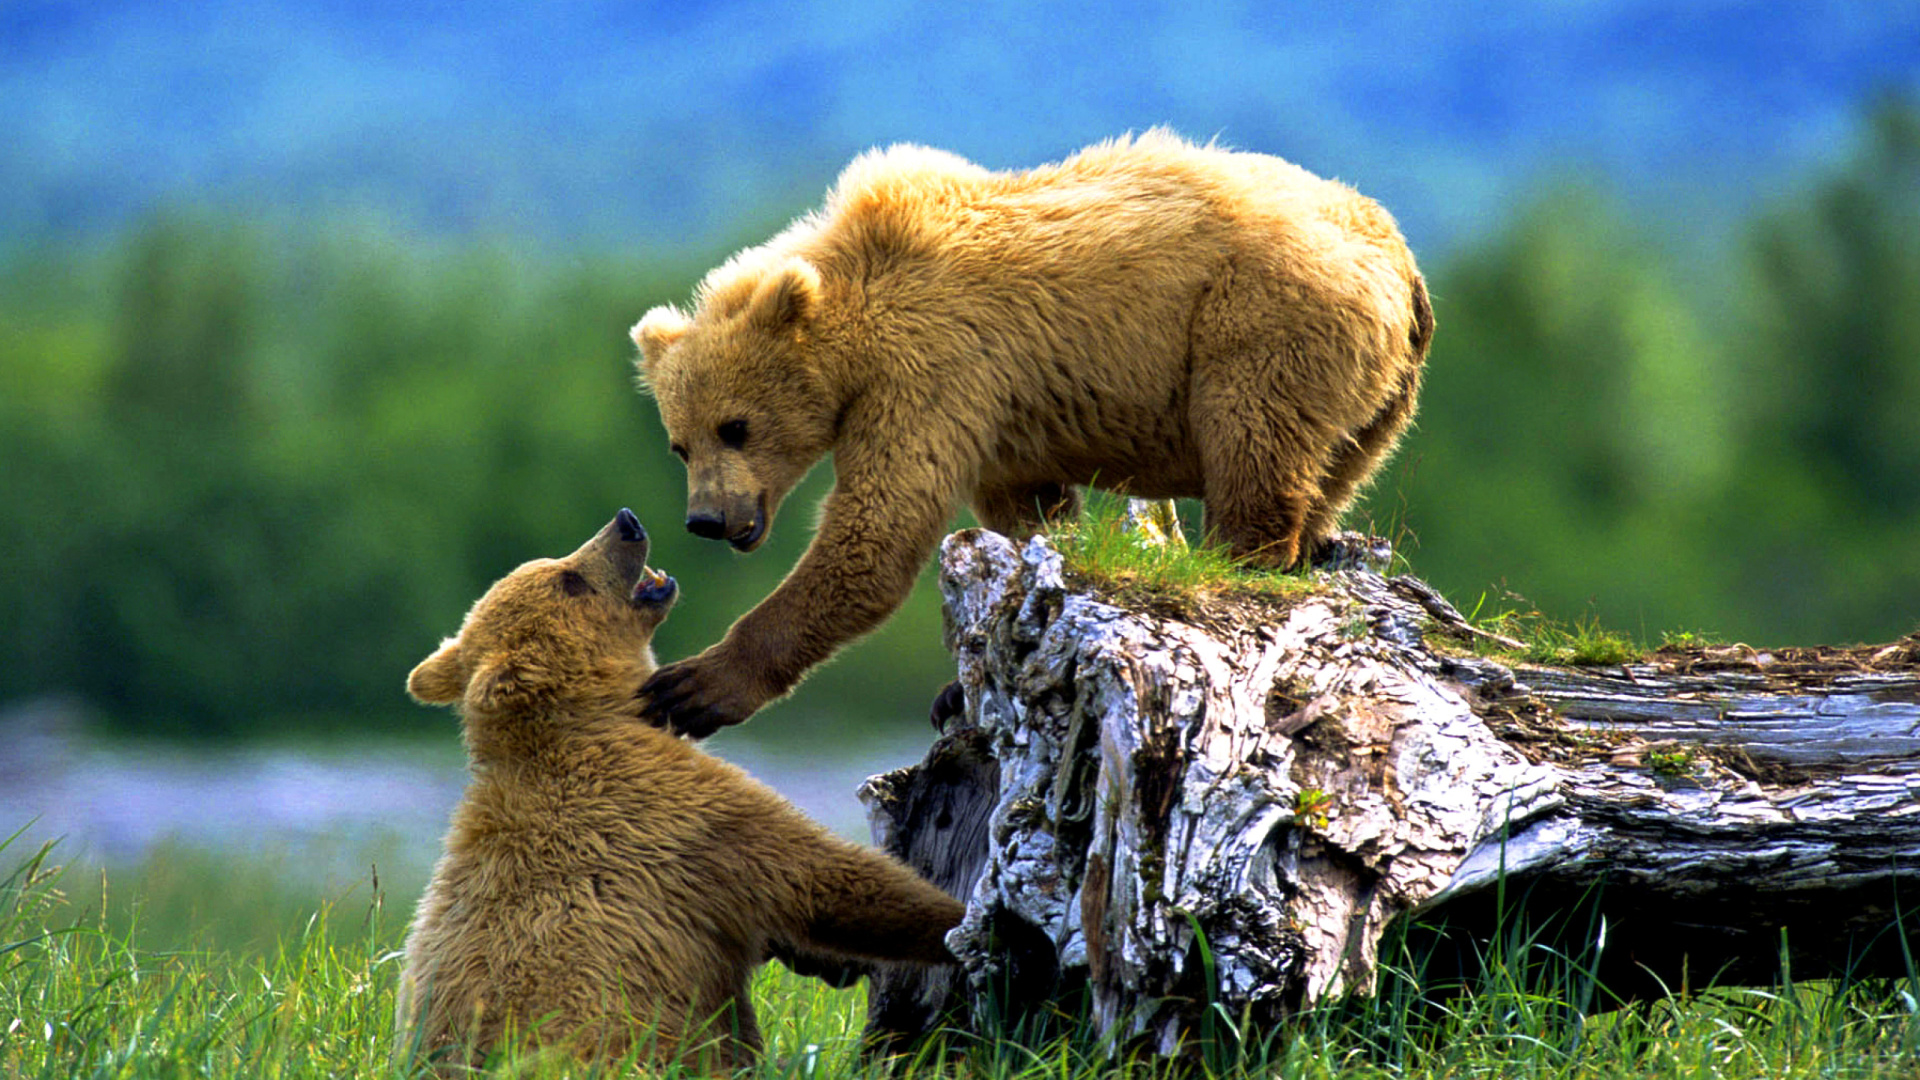 Эротика от сексуальной грудастой блондинки с медведем в дикой природе